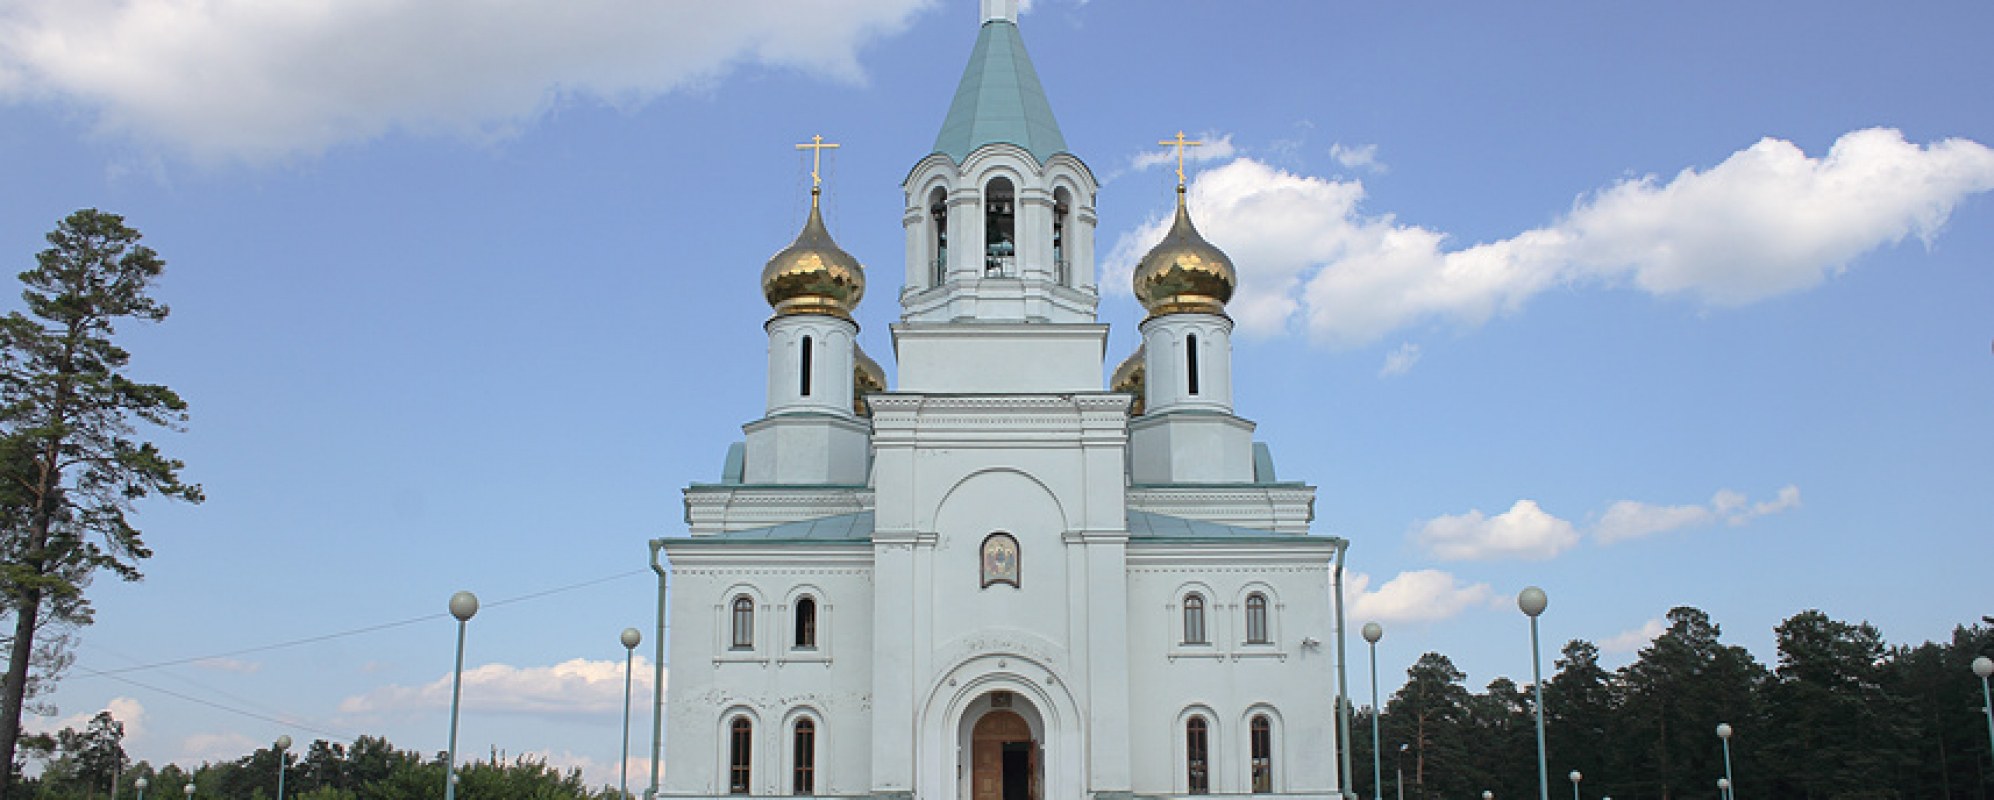 Фотографии храма Свято-Троицкий кафедральный собор